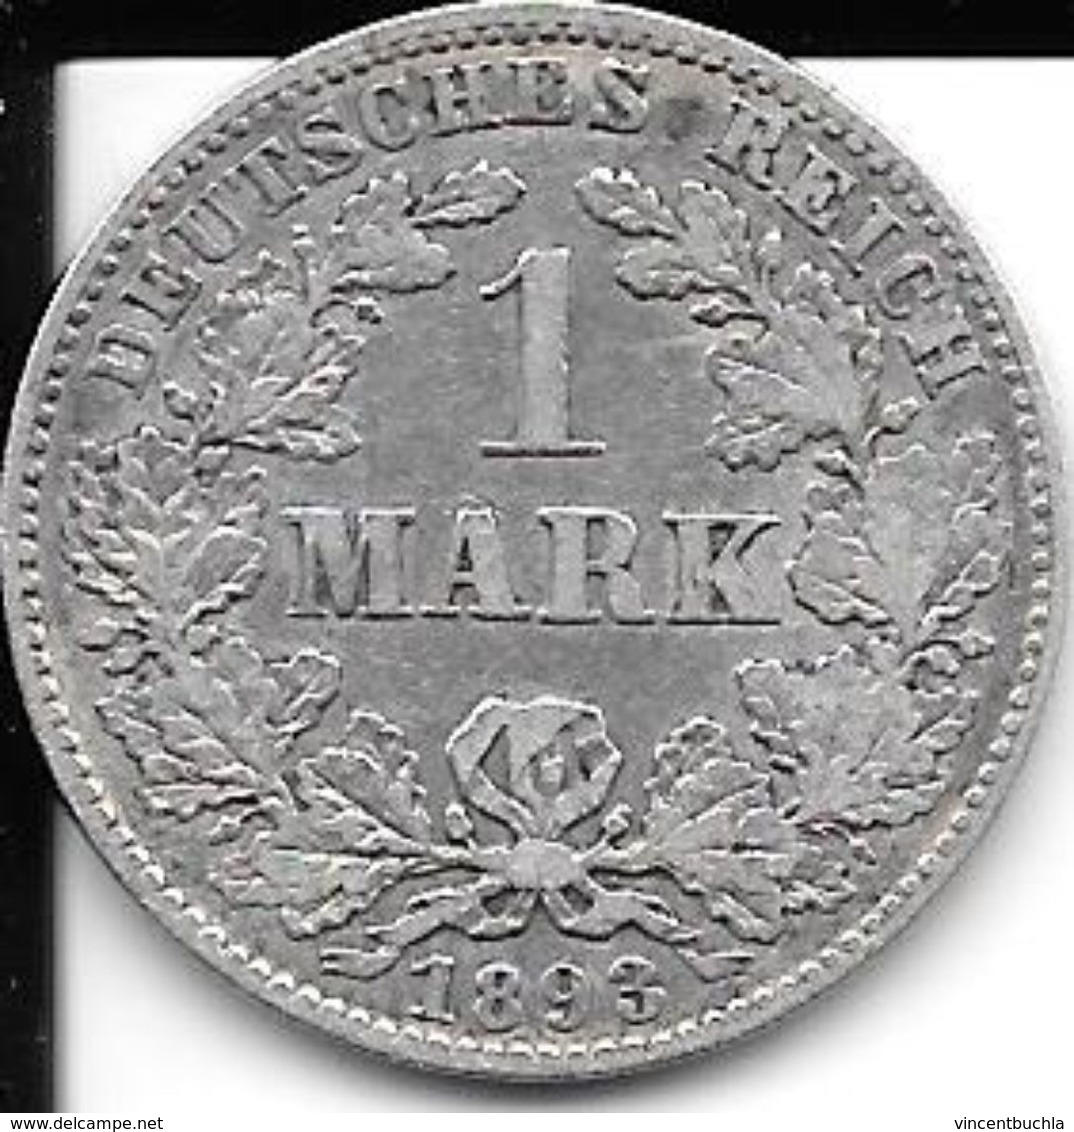 1 Mark 1893 J - Germany - ALLEMAGNE - Deutsches Reich TTB - 1 Mark